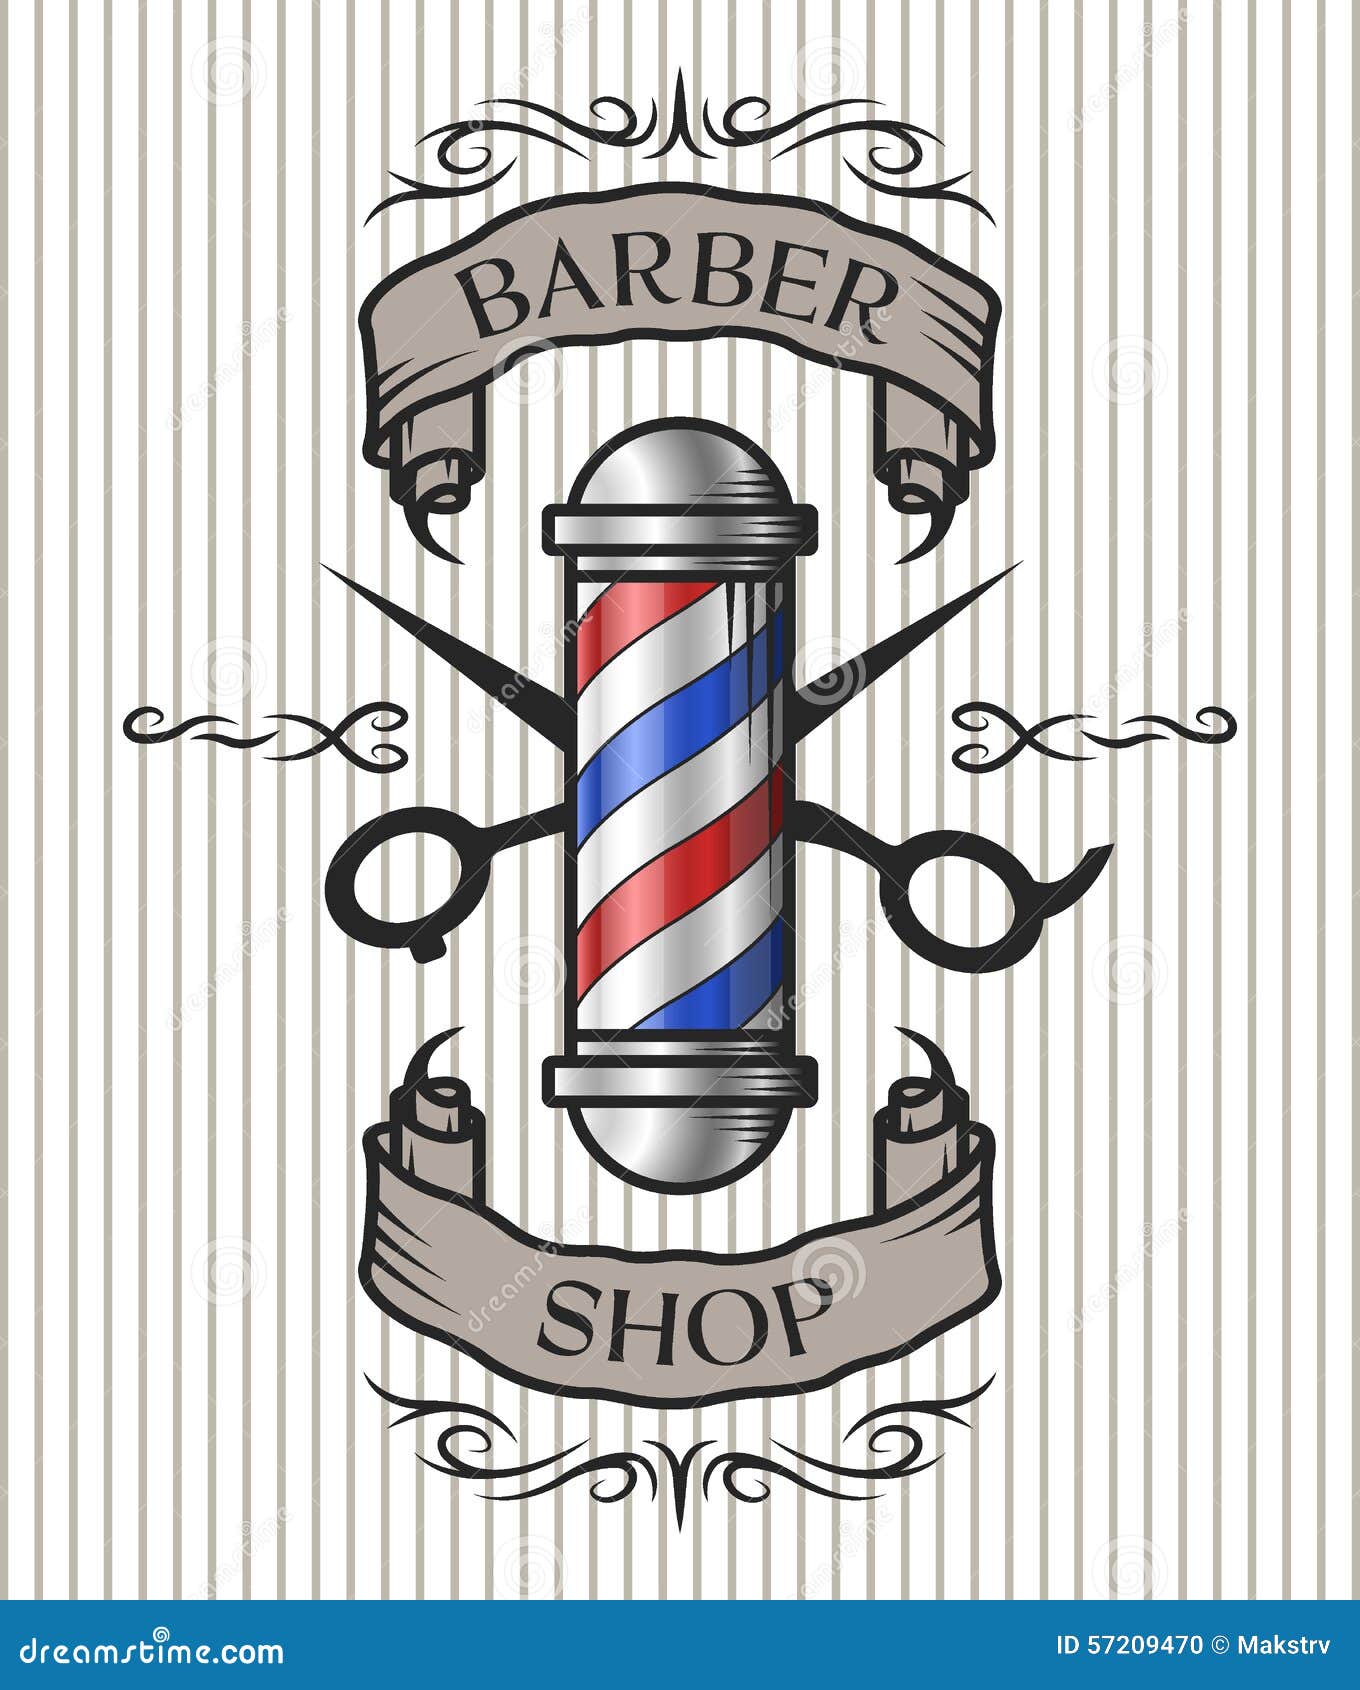 barber shop emblem